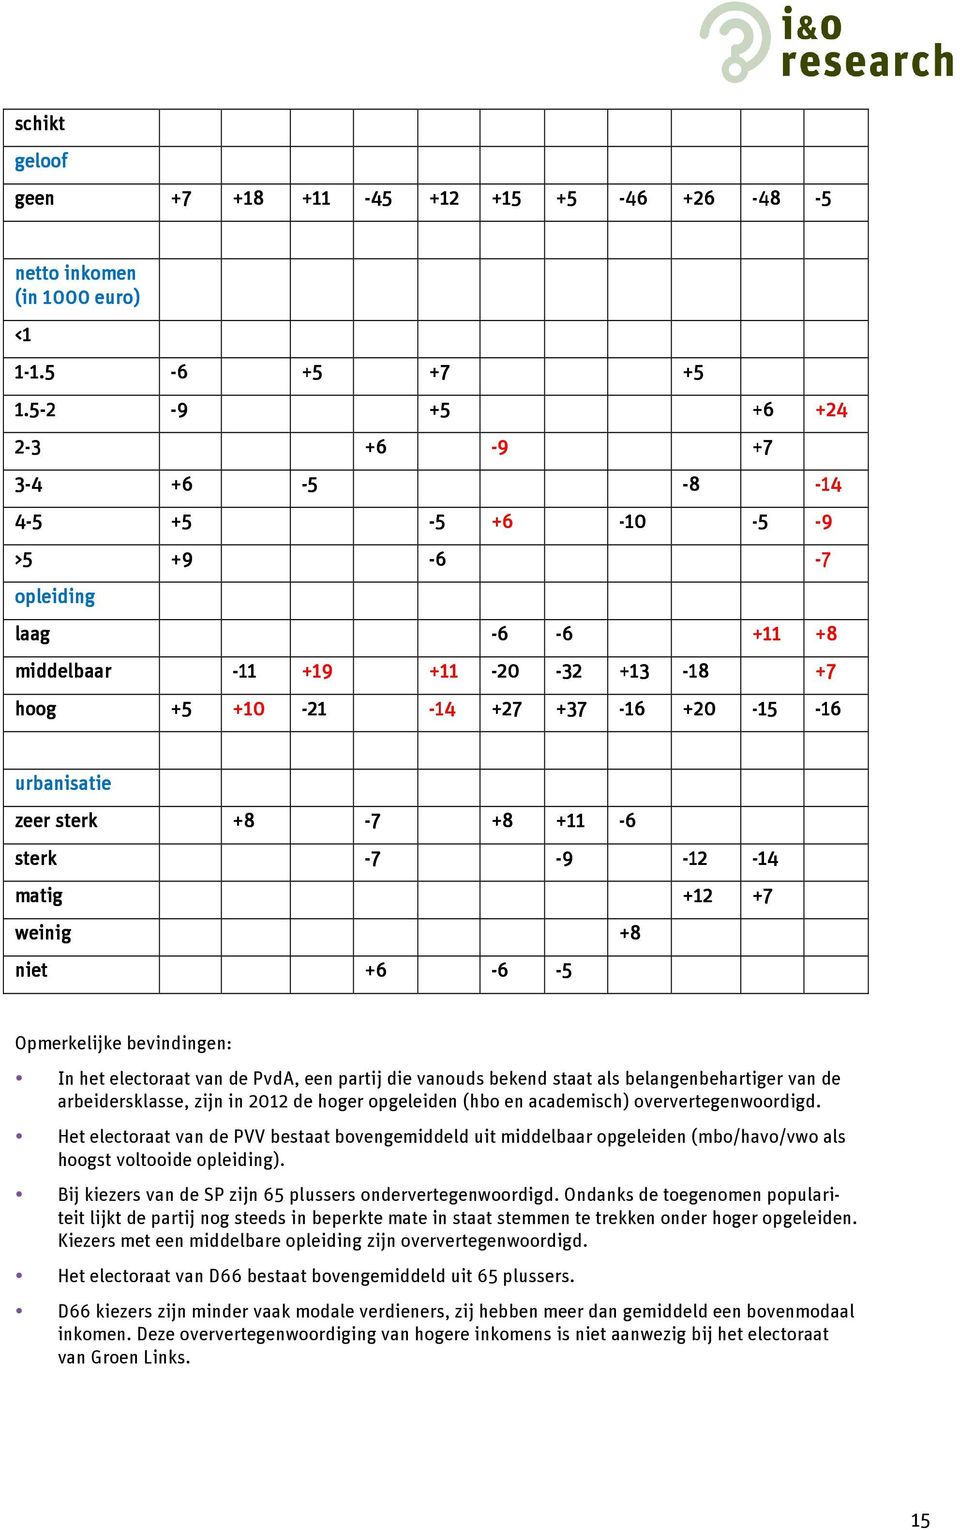 sterk +8-7 +8 +11-6 sterk -7-9 -12-14 matig +12 +7 weinig +8 niet +6-6 -5 Opmerkelijke bevindingen: In het electoraat van de PvdA, een partij die vanouds bekend staat als belangenbehartiger van de